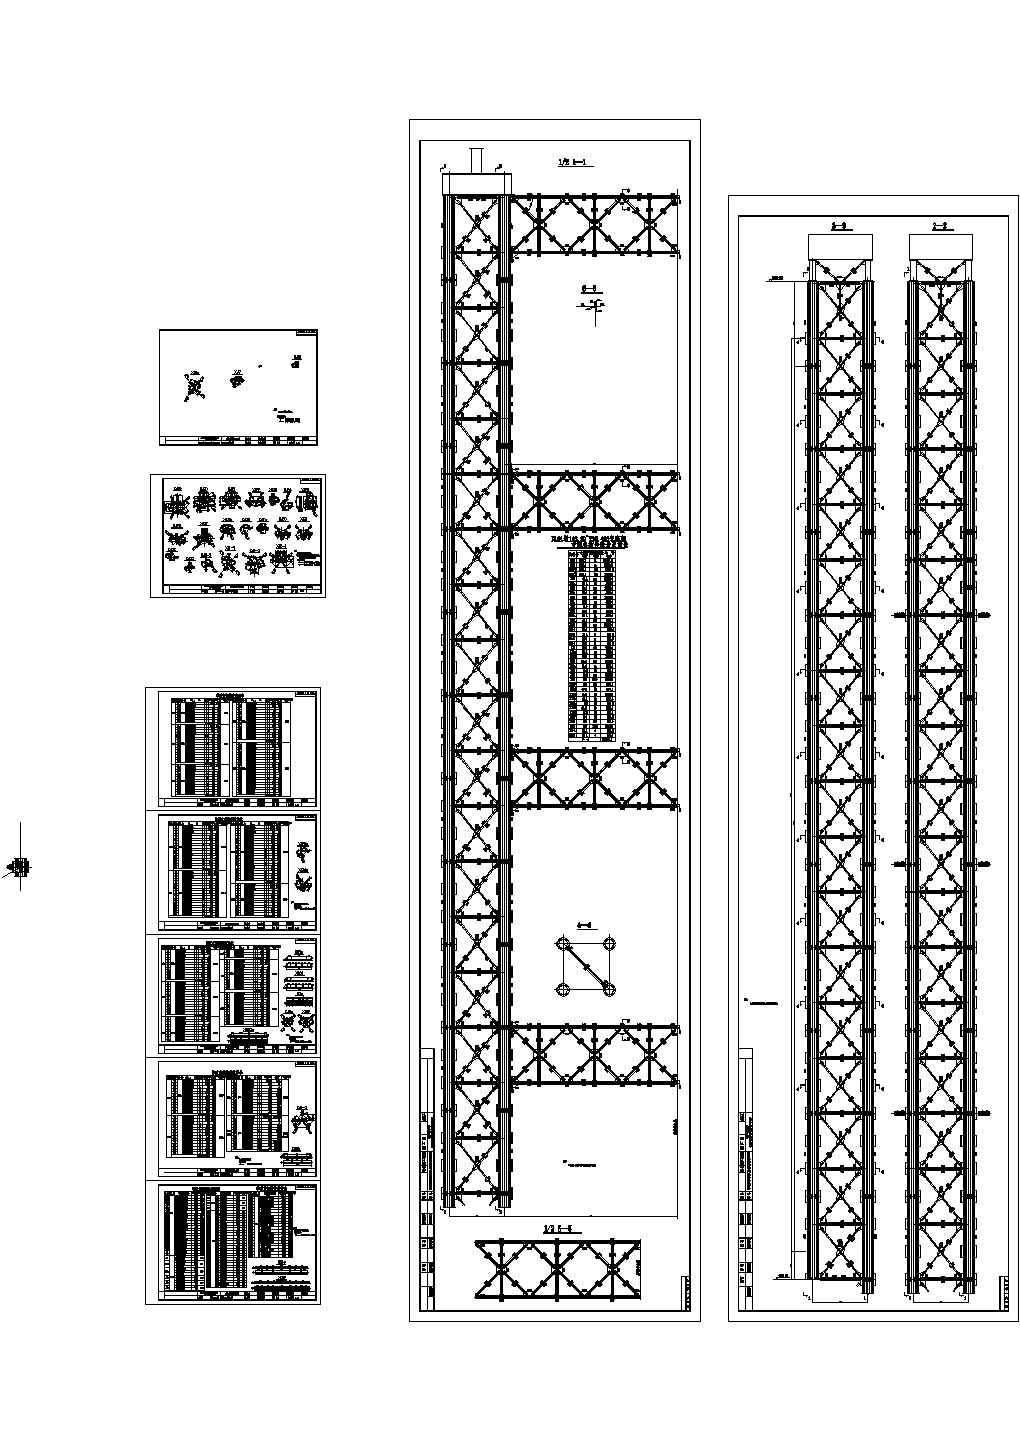 190+552+190m三跨连续钢桁系杆拱桥全套施工图